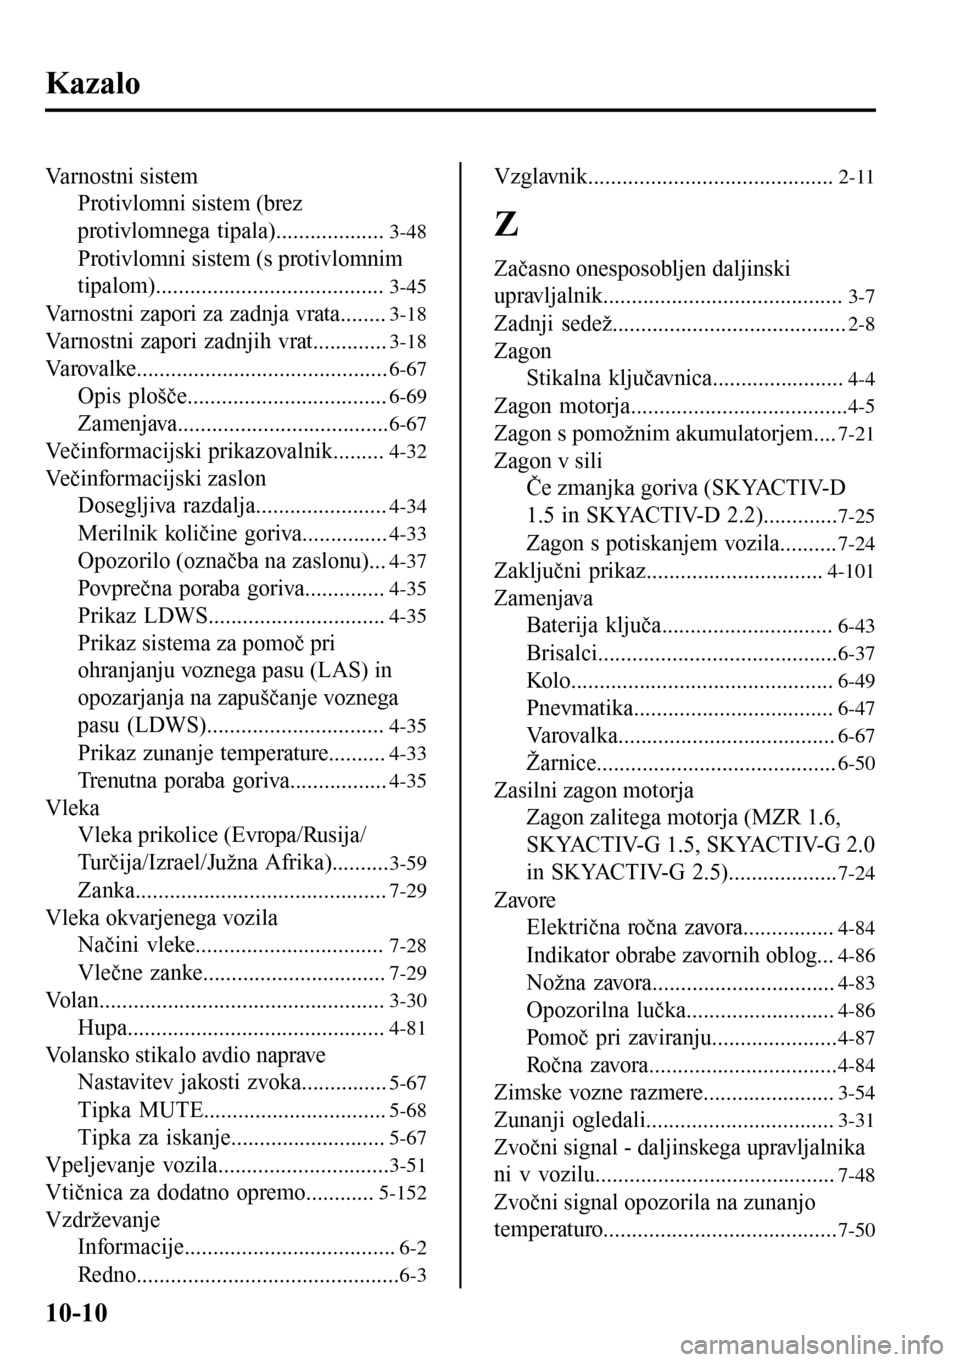 MAZDA MODEL 3 HATCHBACK 2016  Priročnik za lastnika (in Slovenian) Kazalo
Varnostni sistem
Protivlomni sistem (brez
protivlomnega tipala)...................
3-48
Protivlomni sistem (s protivlomnim
tipalom)........................................
3-45
Varnostni zapori